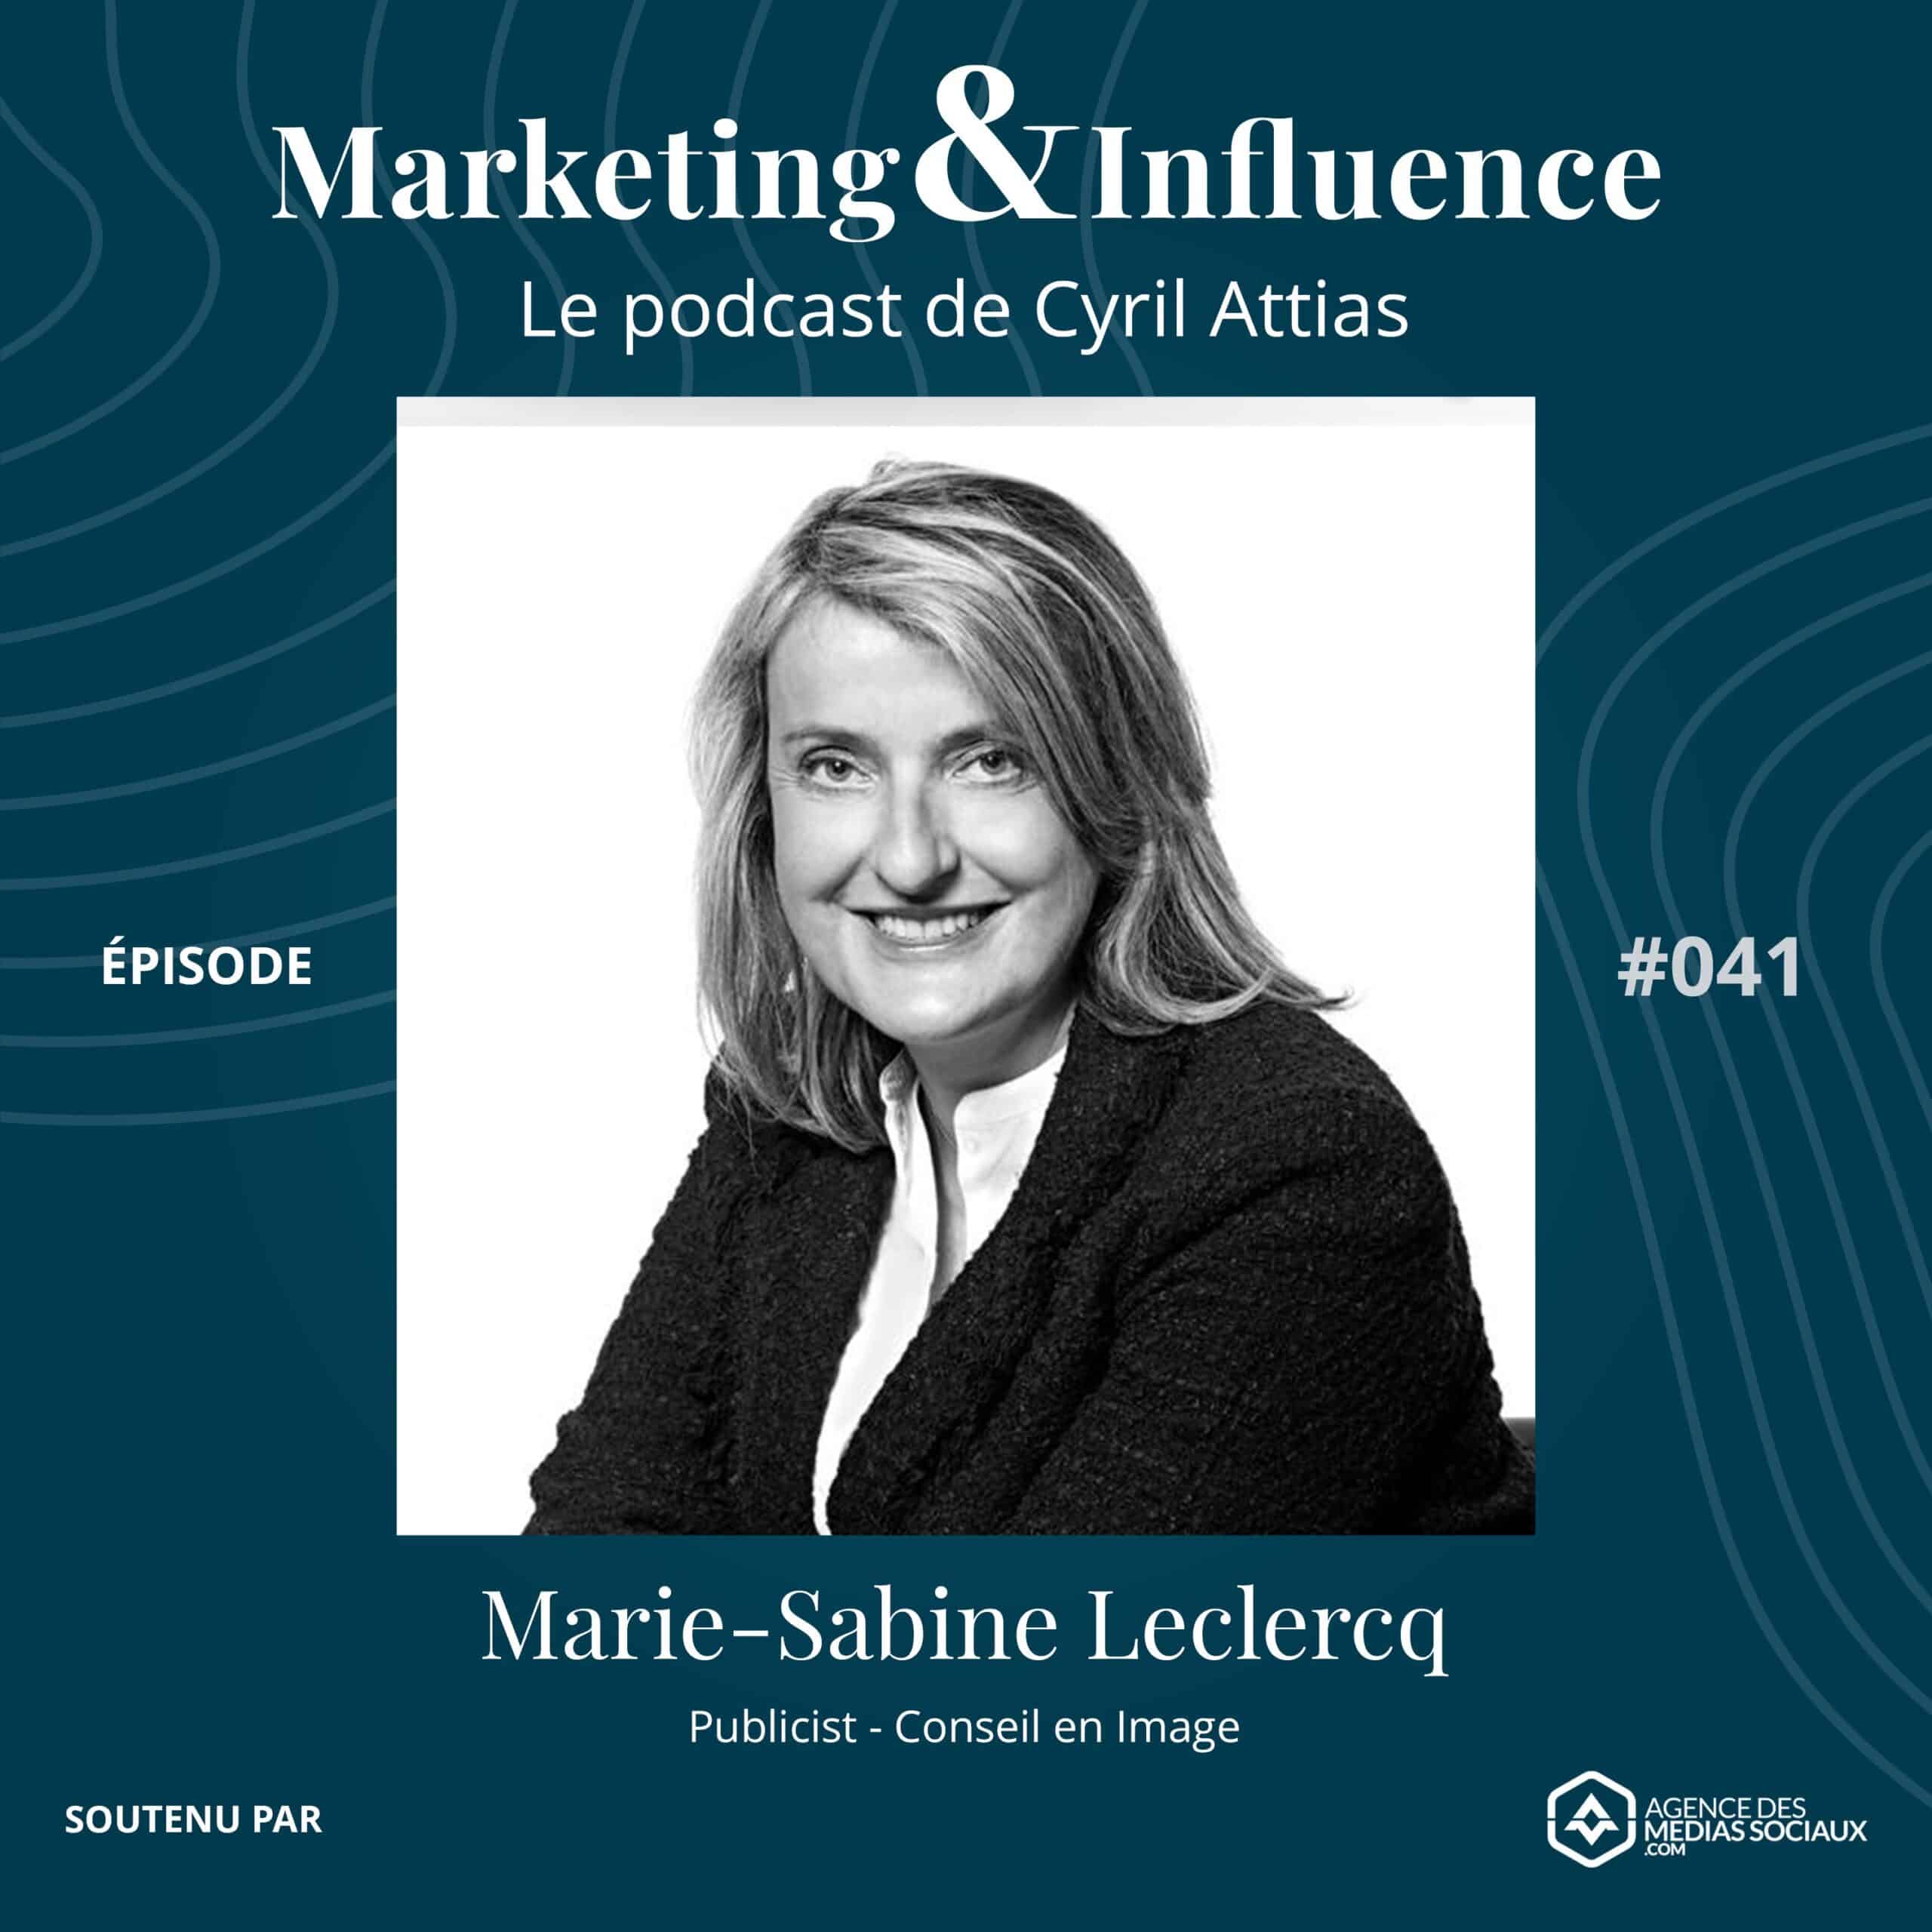 Extrait-Marie-Sabine-Leclercq-publicist-conseil-image-Podcast-Cyril-Attias-Marketing-Influence